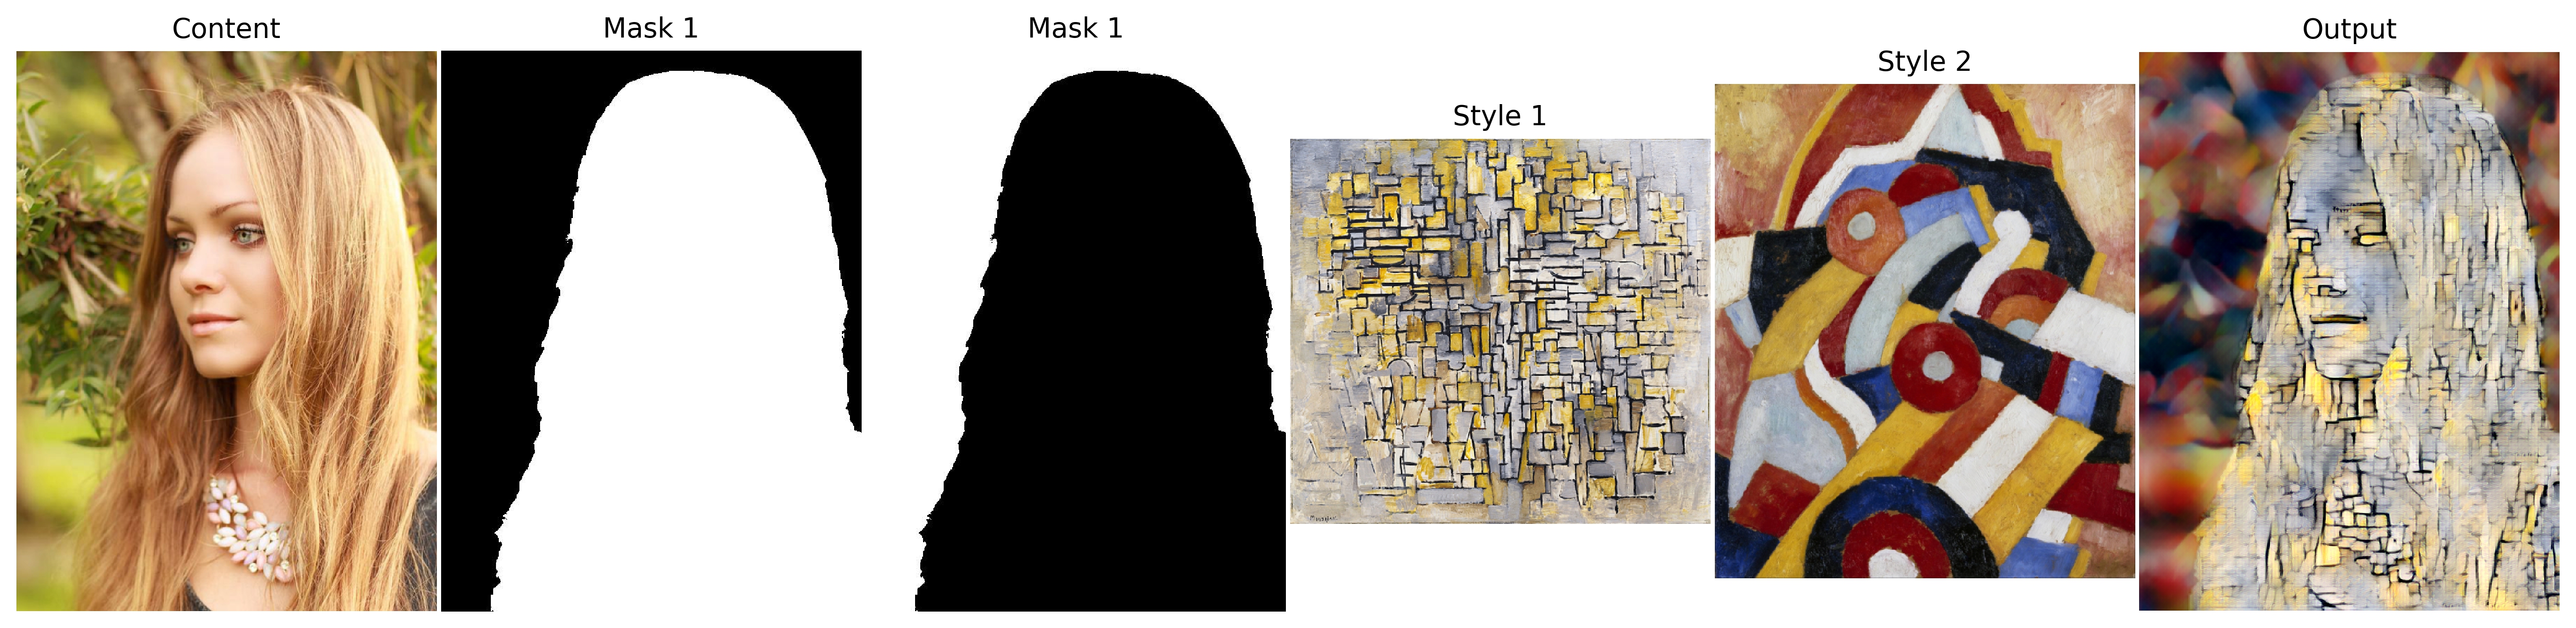 masked_stylization